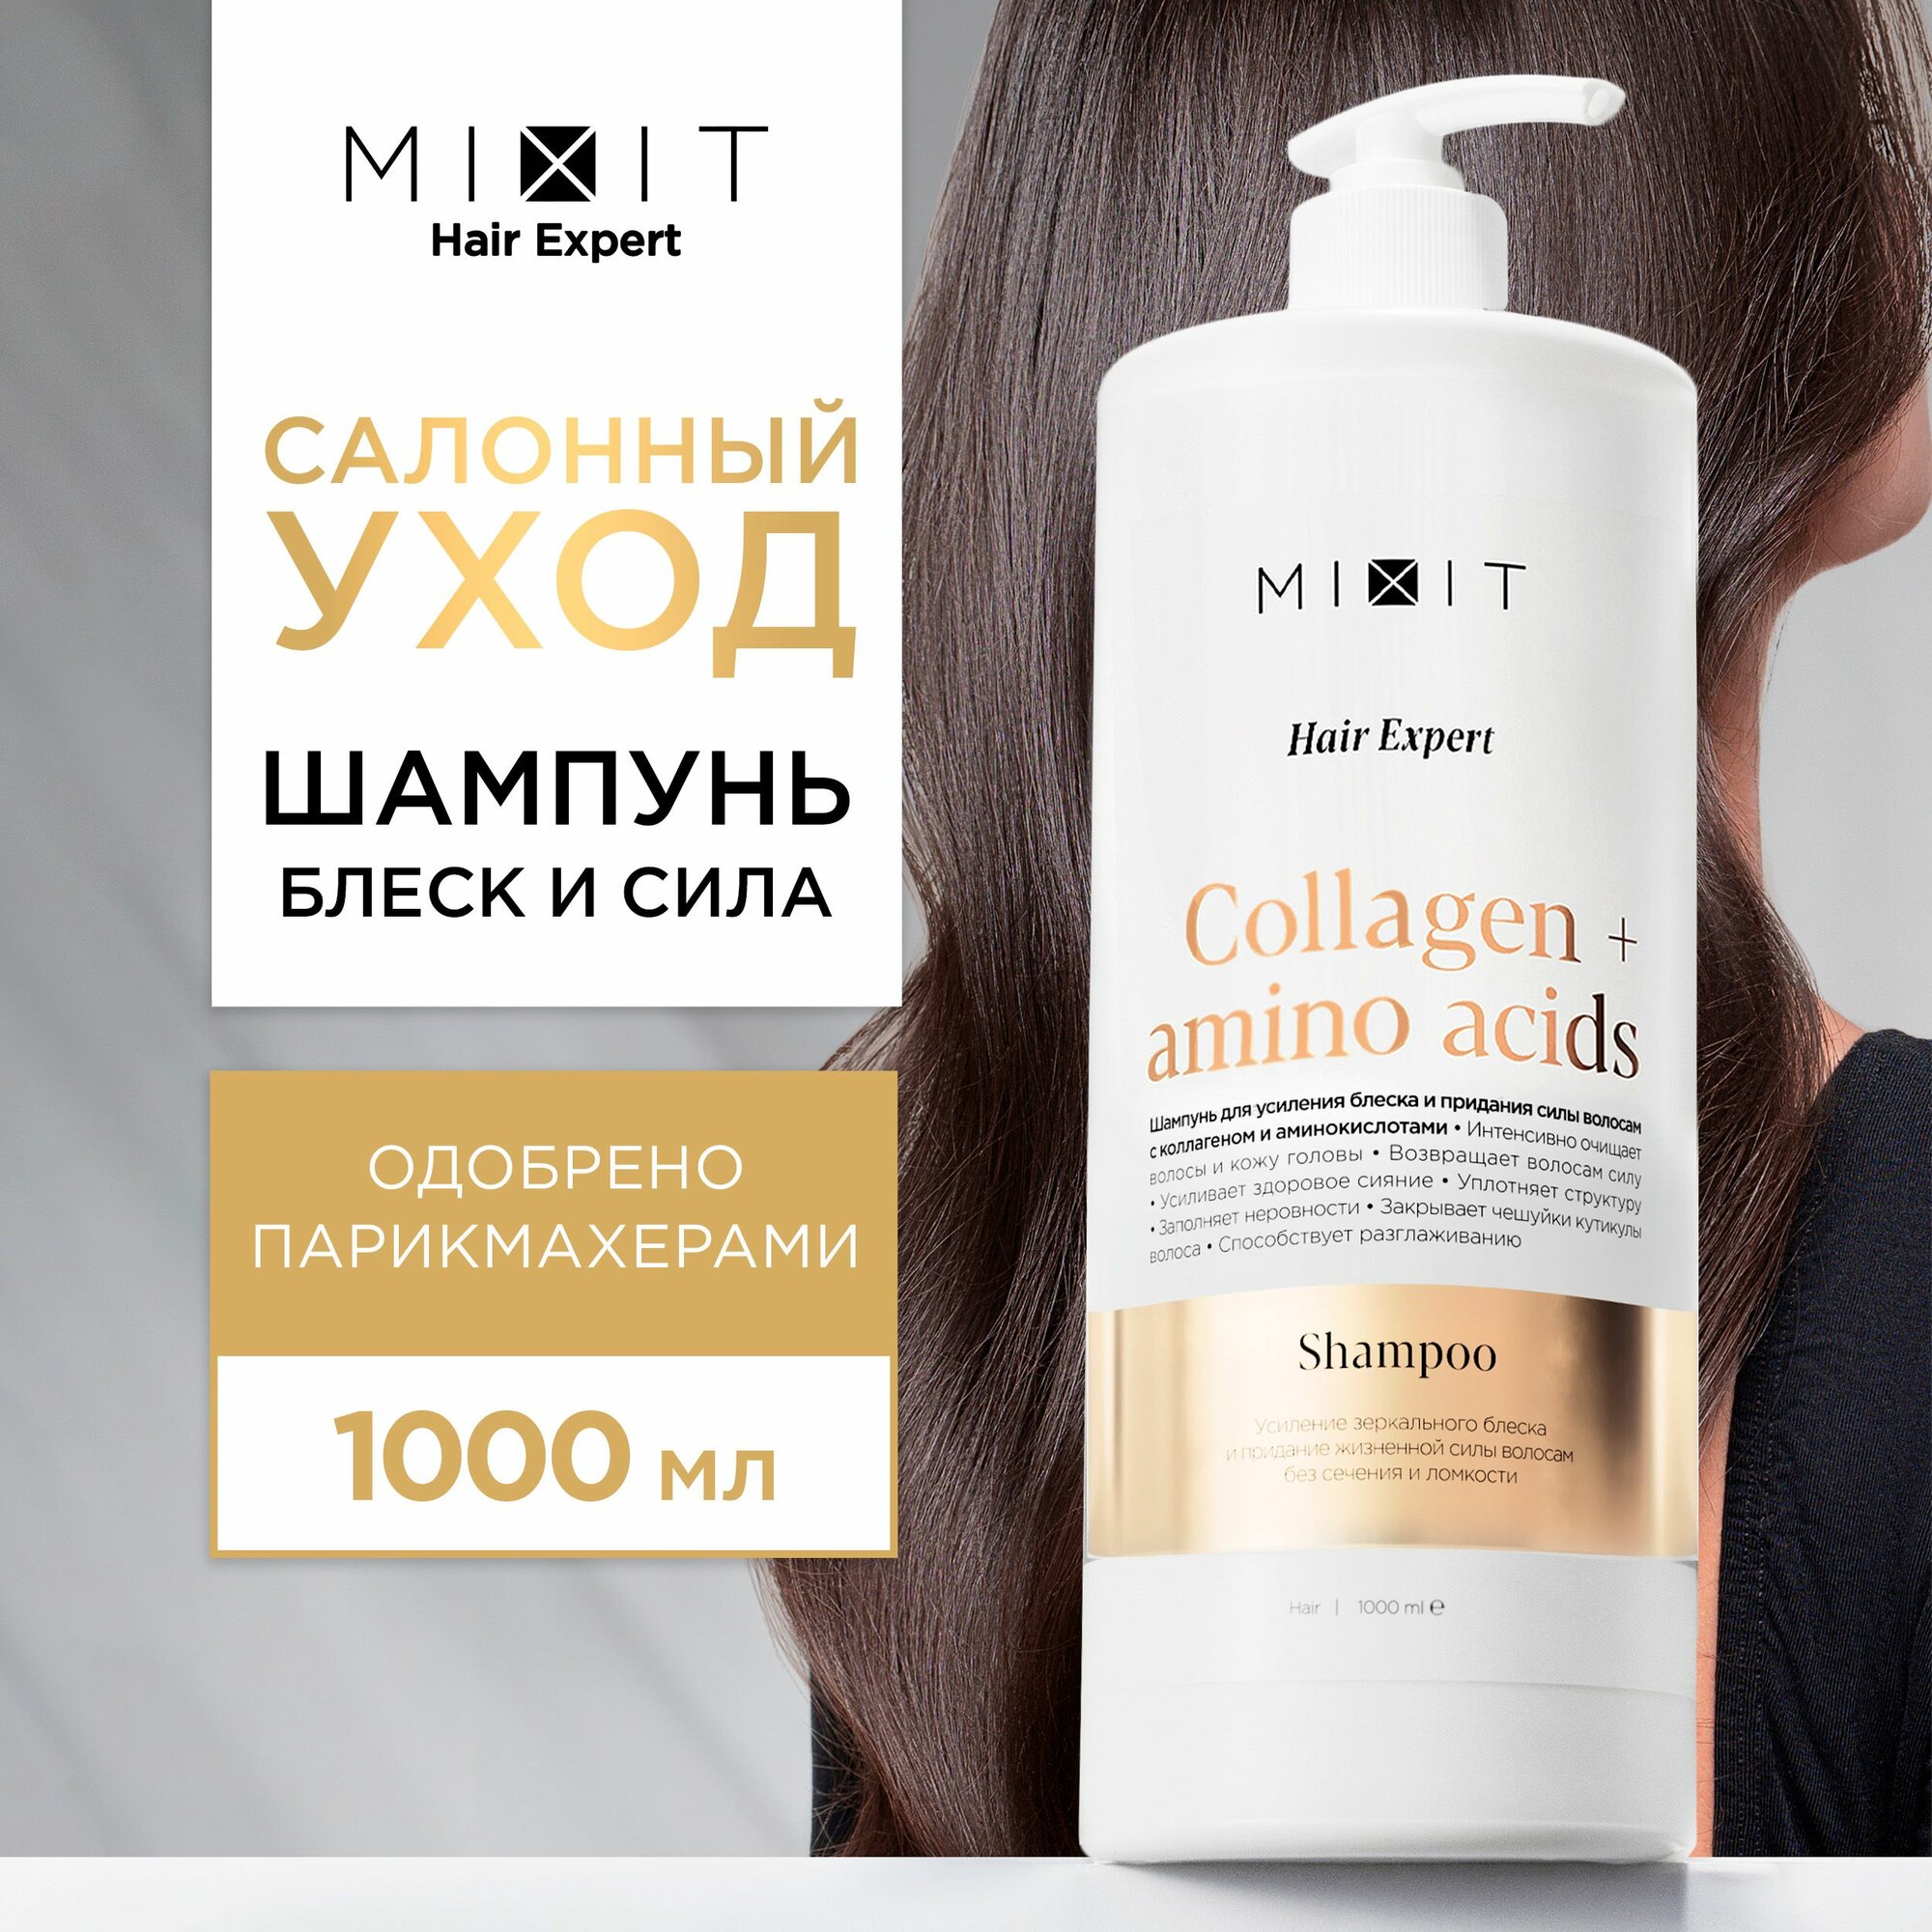 Восстанавливающий шампунь для волос MIXIT против секущихся кончиков и ломкости, 1000 мл